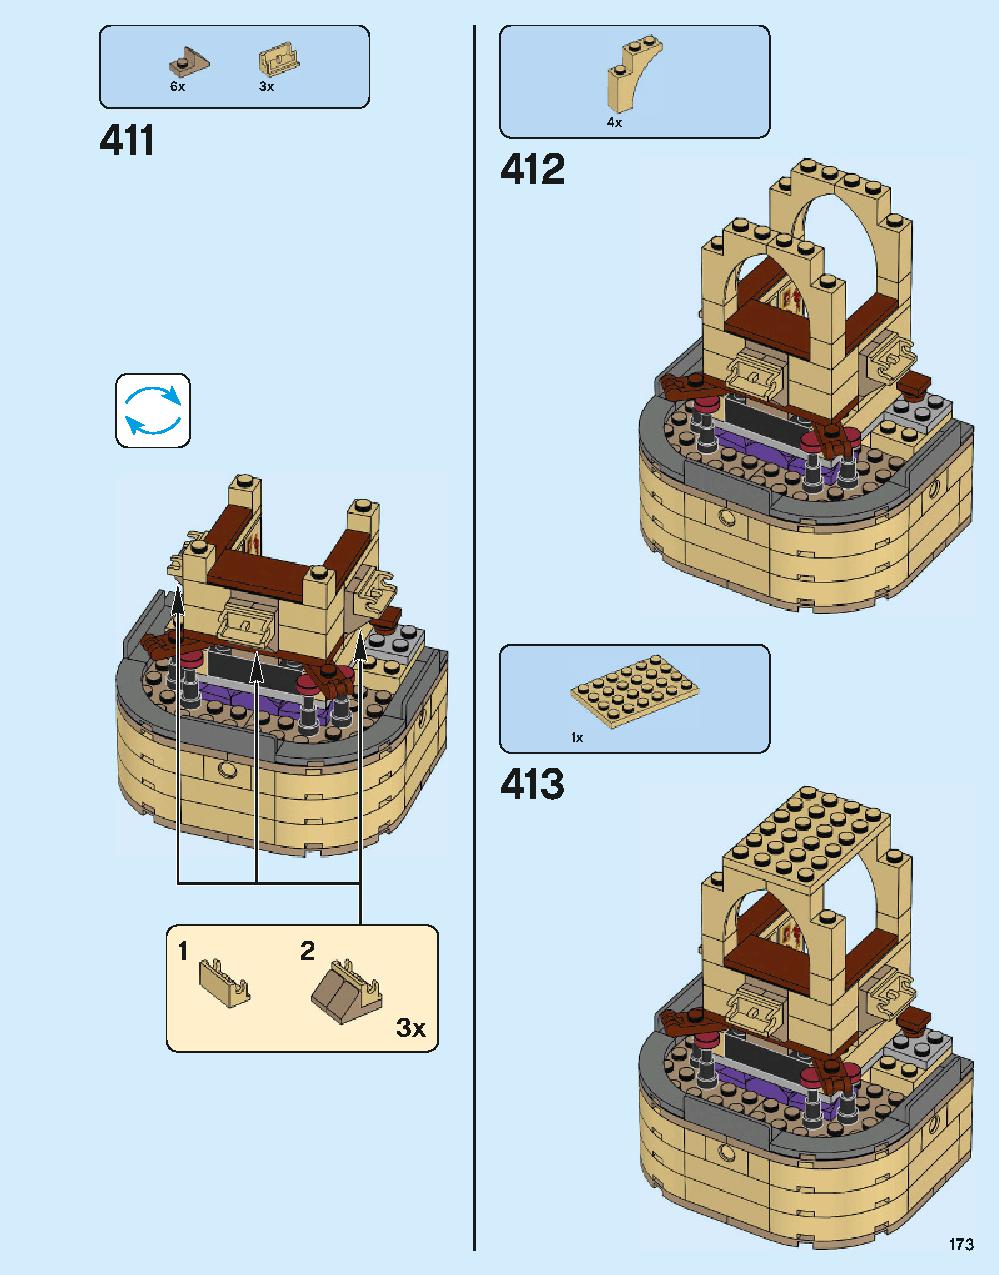 ホグワーツ城 71043 レゴの商品情報 レゴの説明書・組立方法 173 page